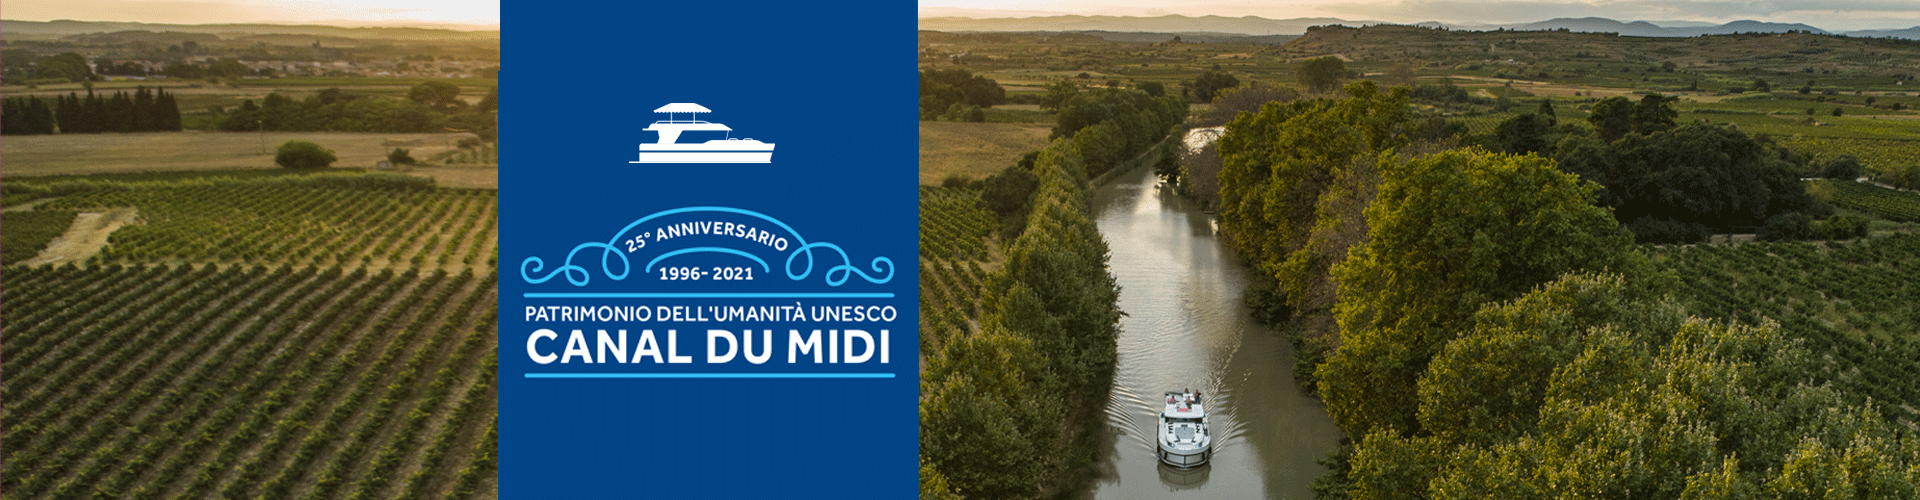 Canal du Midi - 25 anni - Unesco